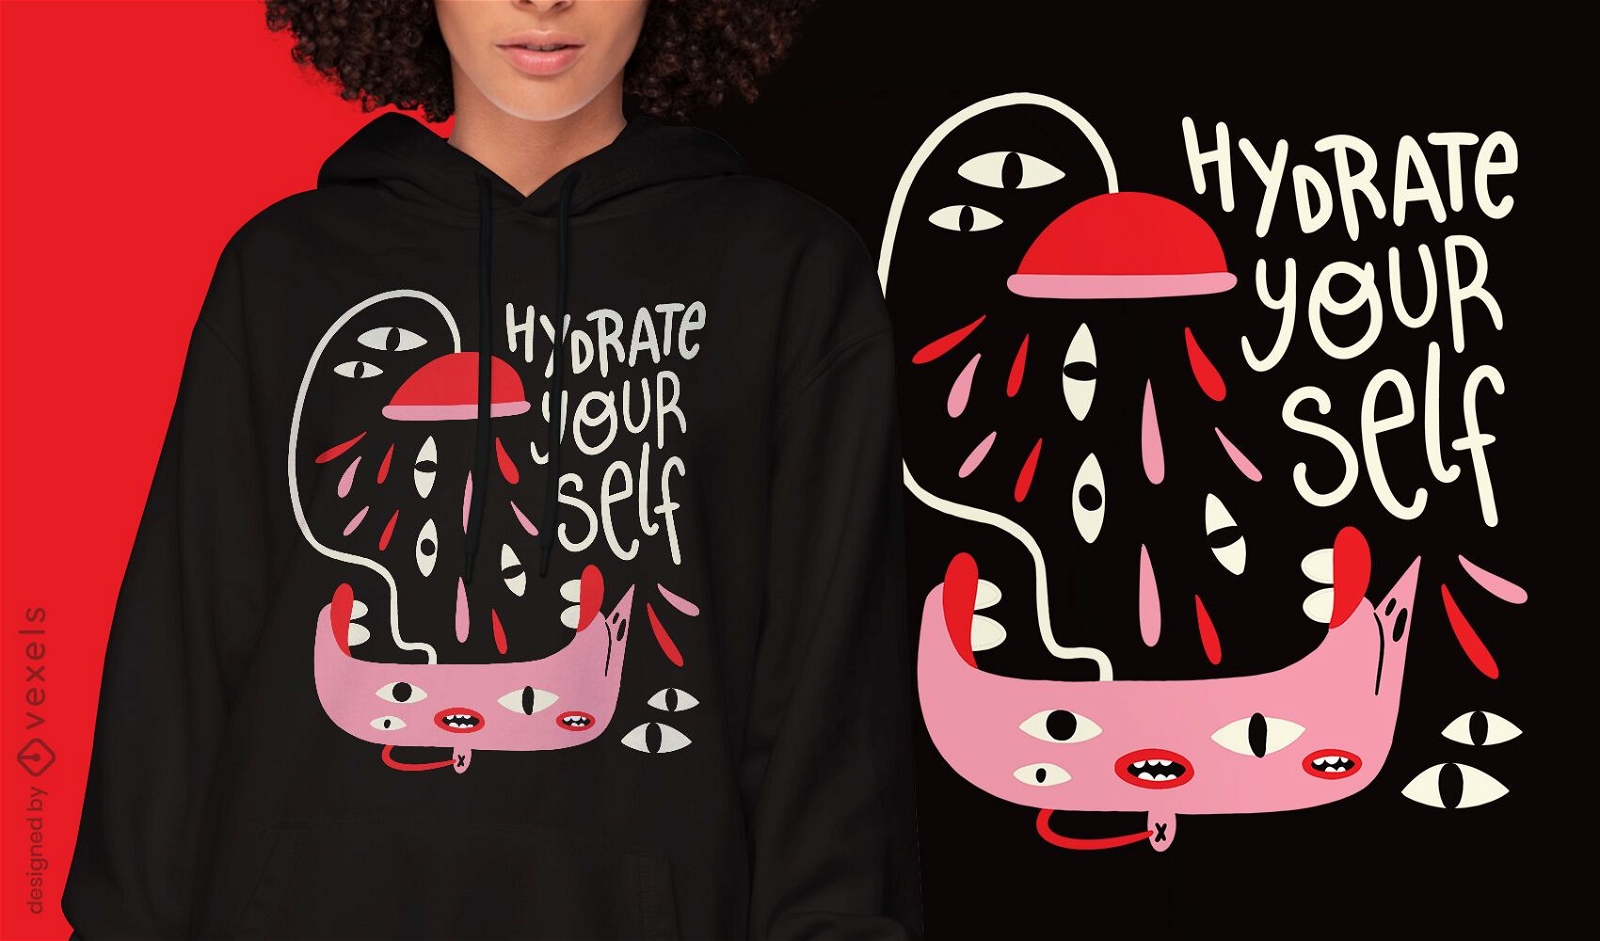 Motivational abstract creature t-shirt design